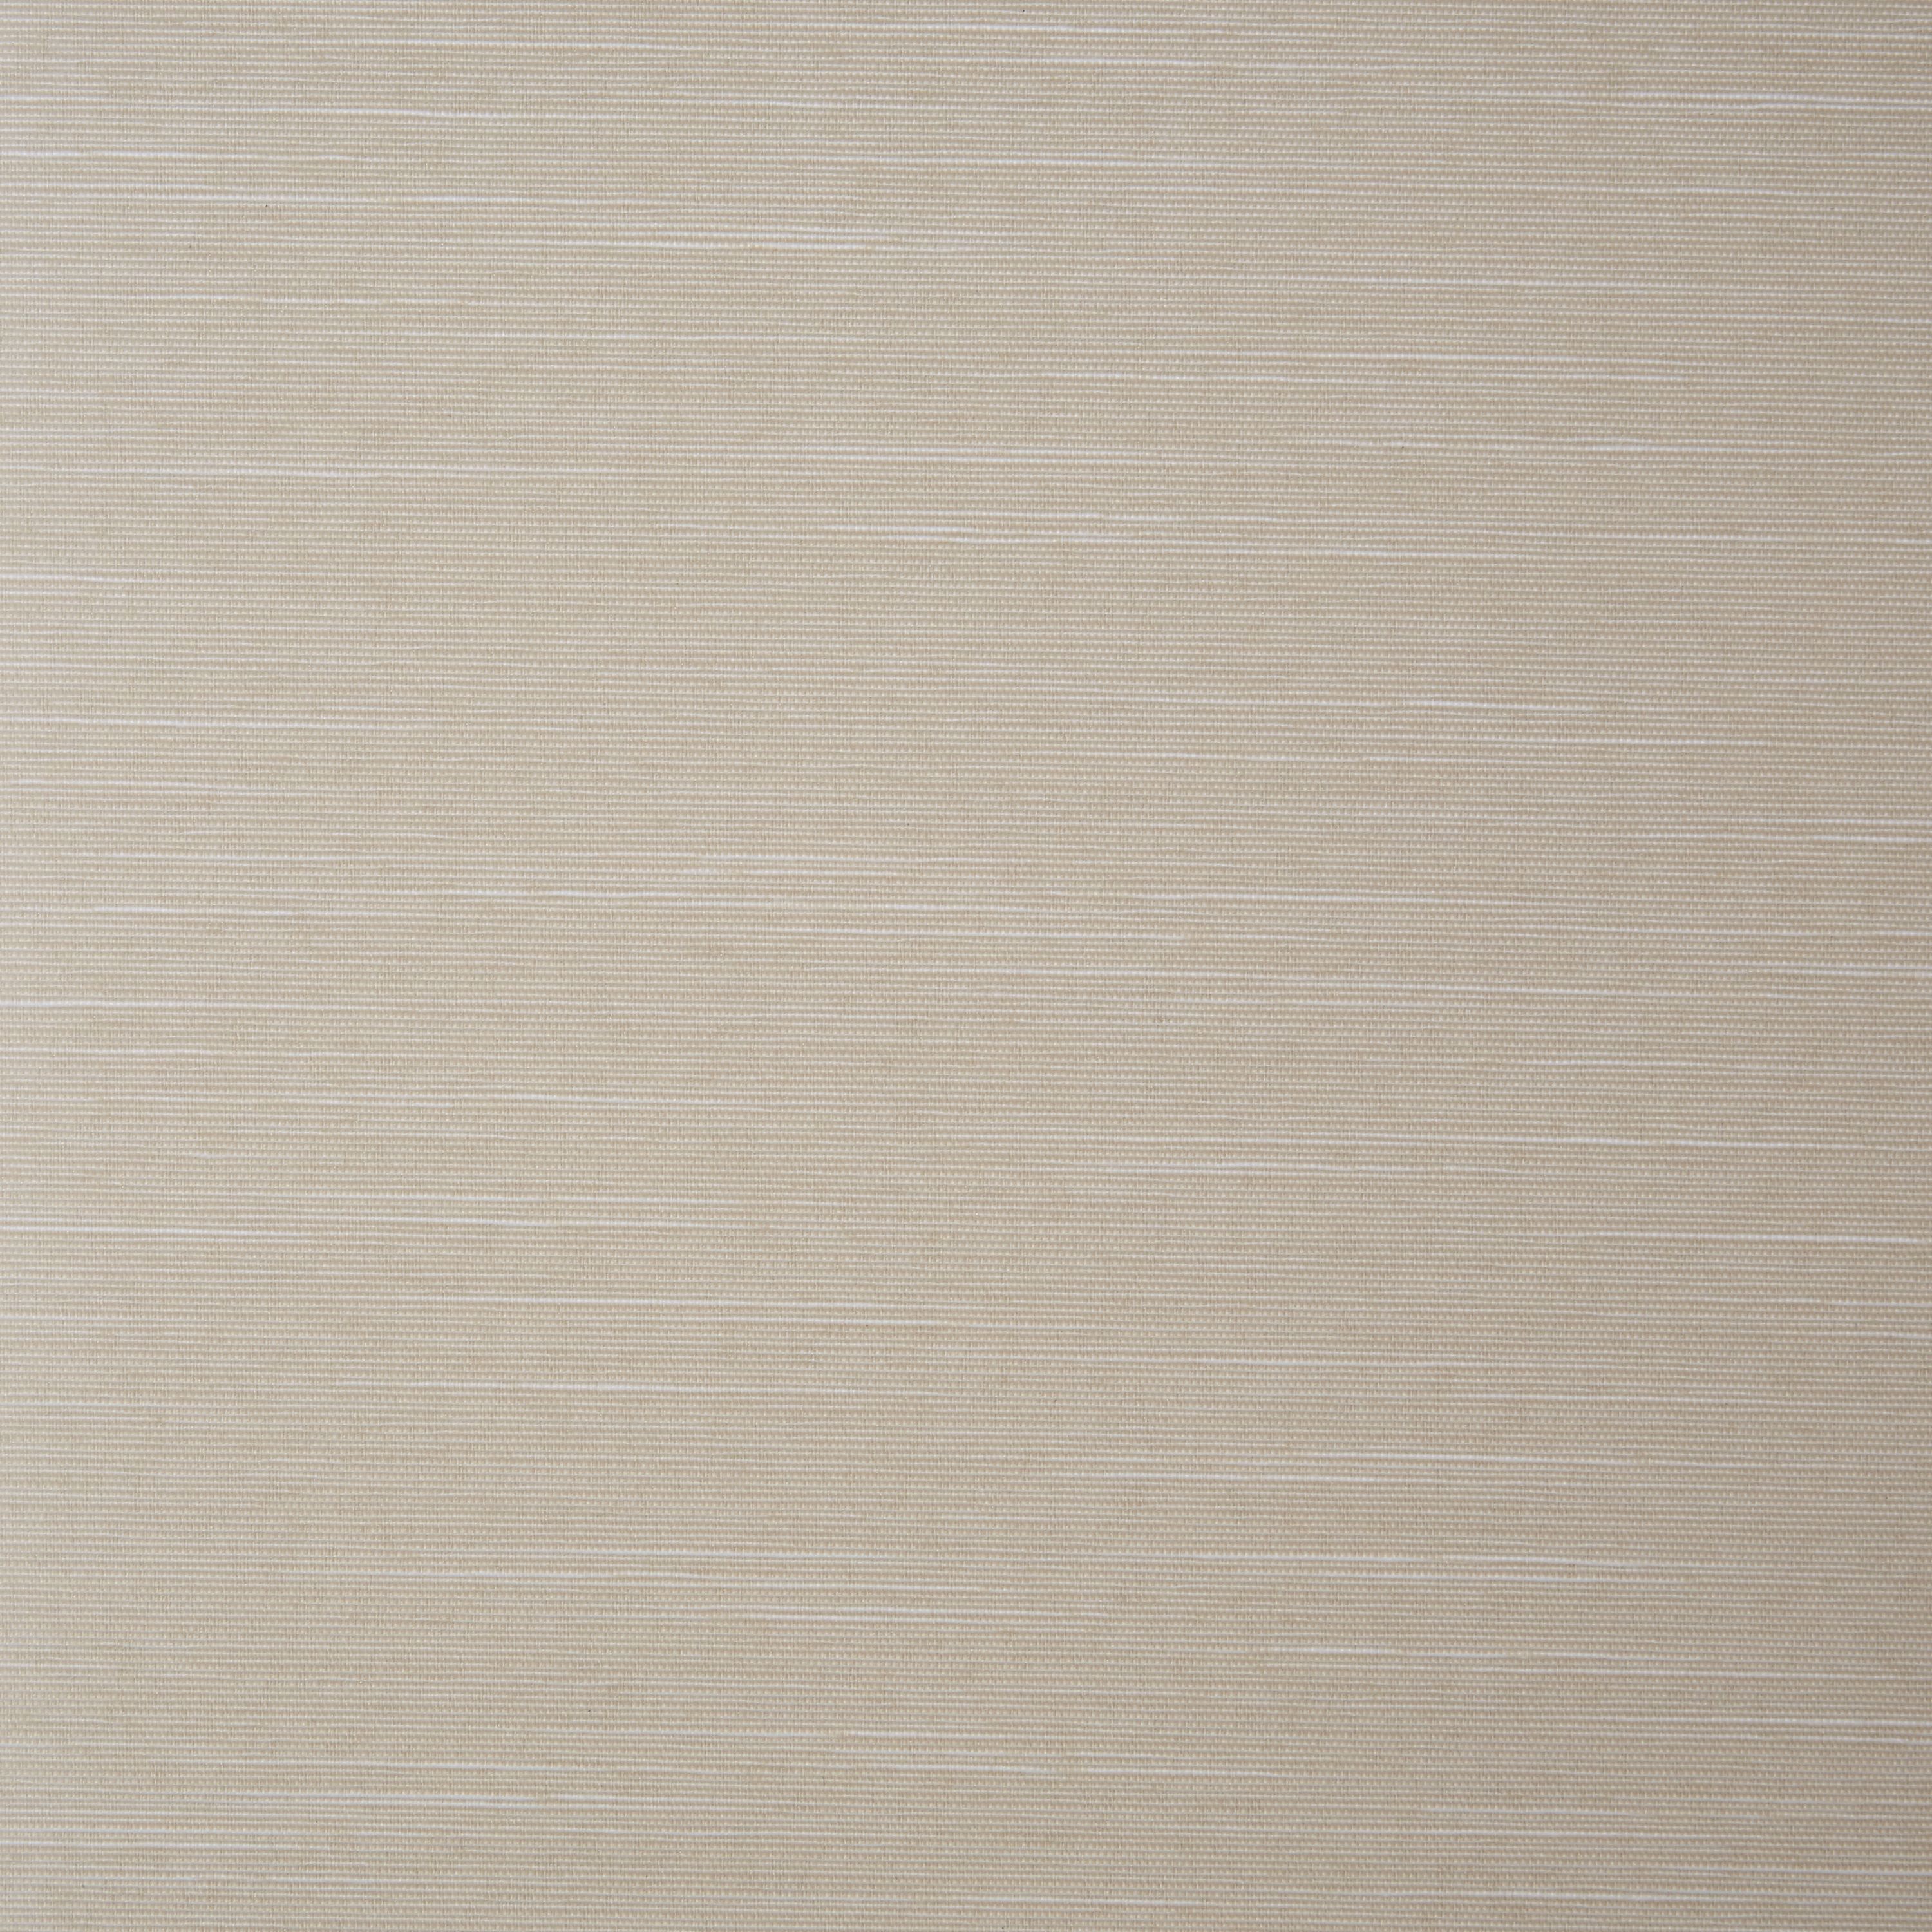 Corded Ivory Plain Daylight Roller blind (W)60cm (L)160cm